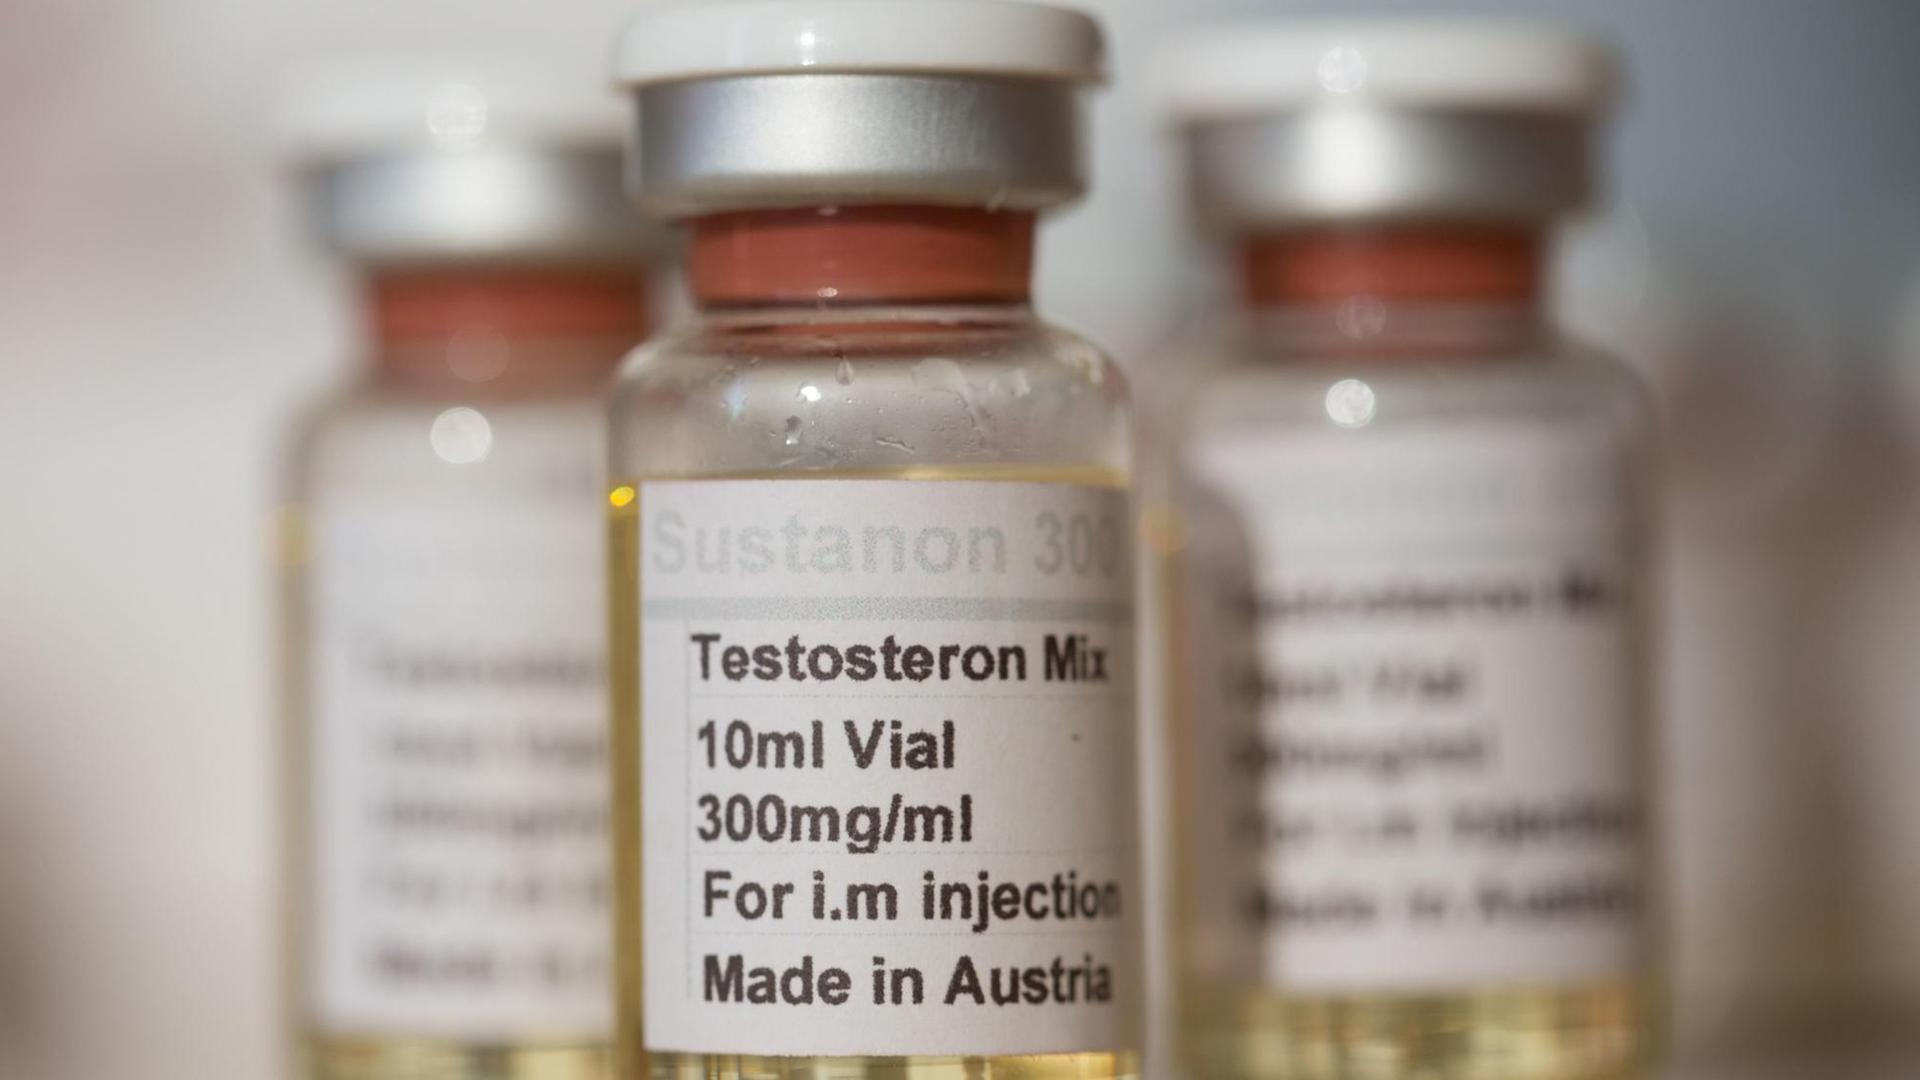 Beschlagnahmte Fläschchen mit einem Testosteron-Medikament sind am 10.09.2015 in Frankfurt am Main (Hessen) im Zollfahndungsamt zu sehen, nach dessen Angaben der Handel mit illegalen Doping- und Potenzmitteln blüht. Hauptabnehmer ist die Bodybuilder-Szene.